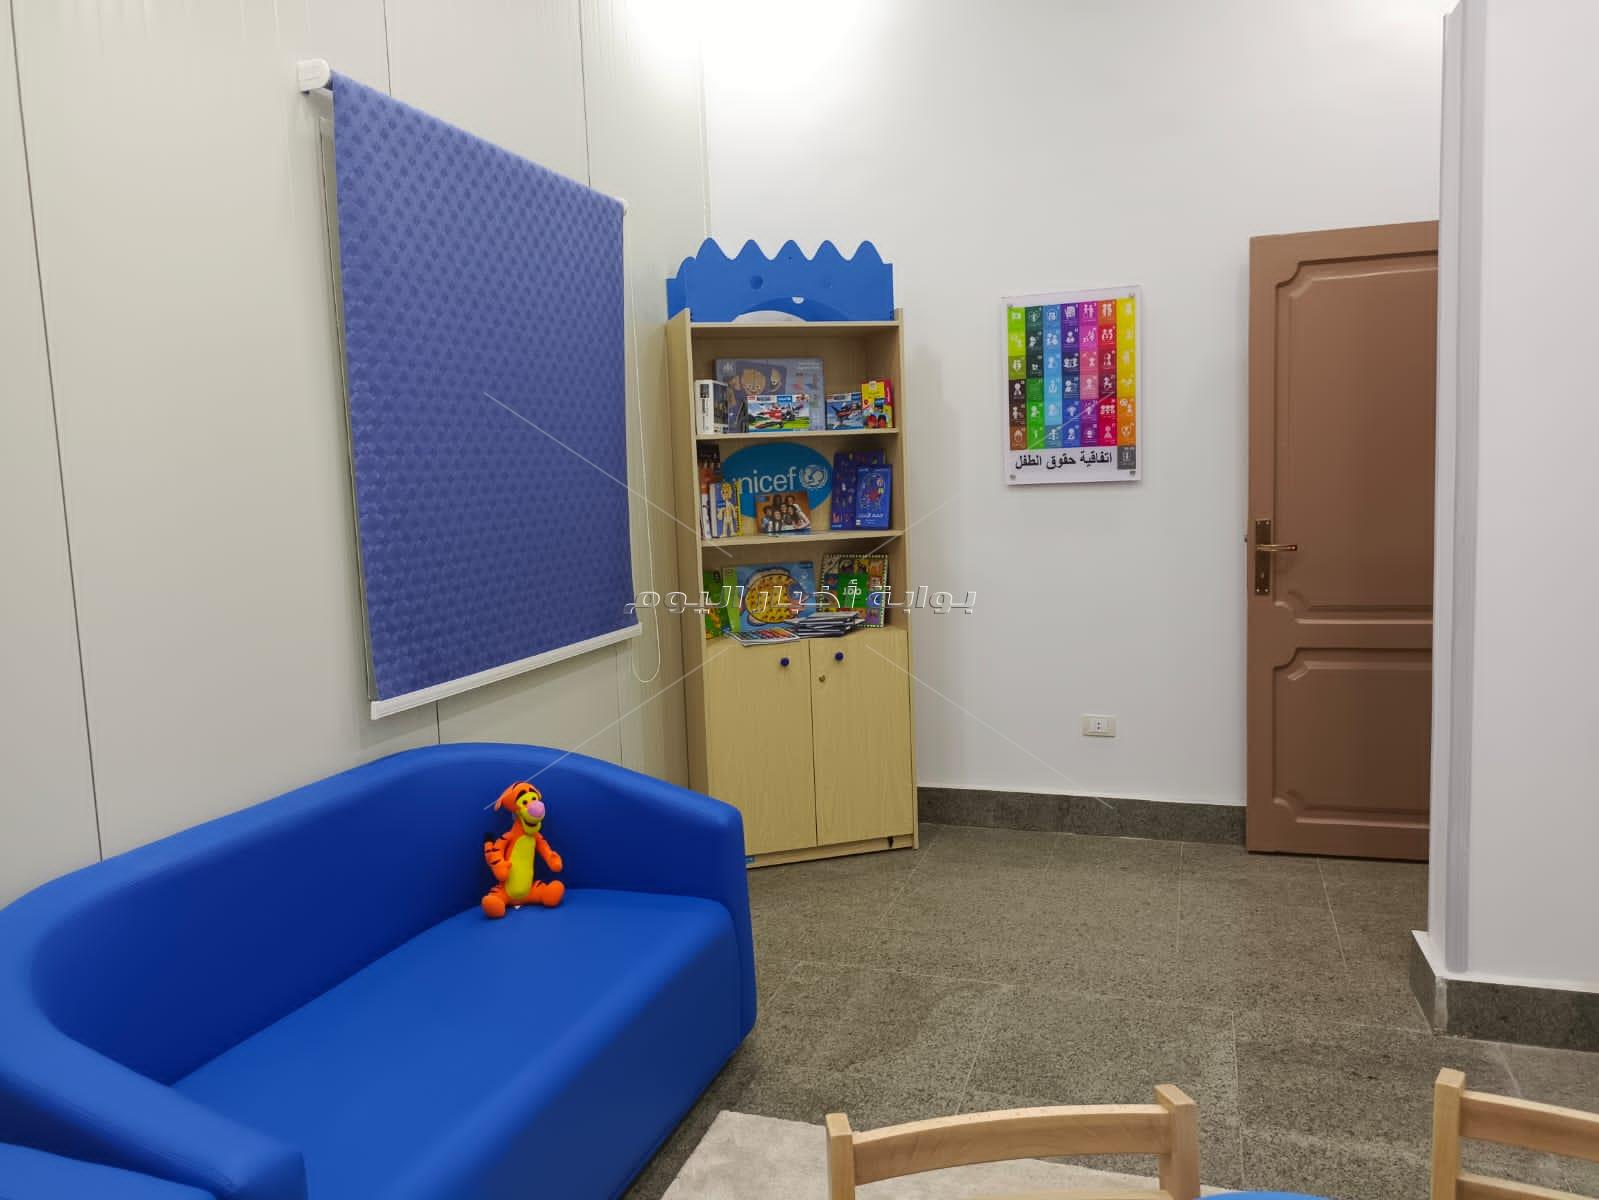 محكمة الطفل ببنها: مخصصة باللون الأزرق لاستقرار العقلي والعاطفي للطفل